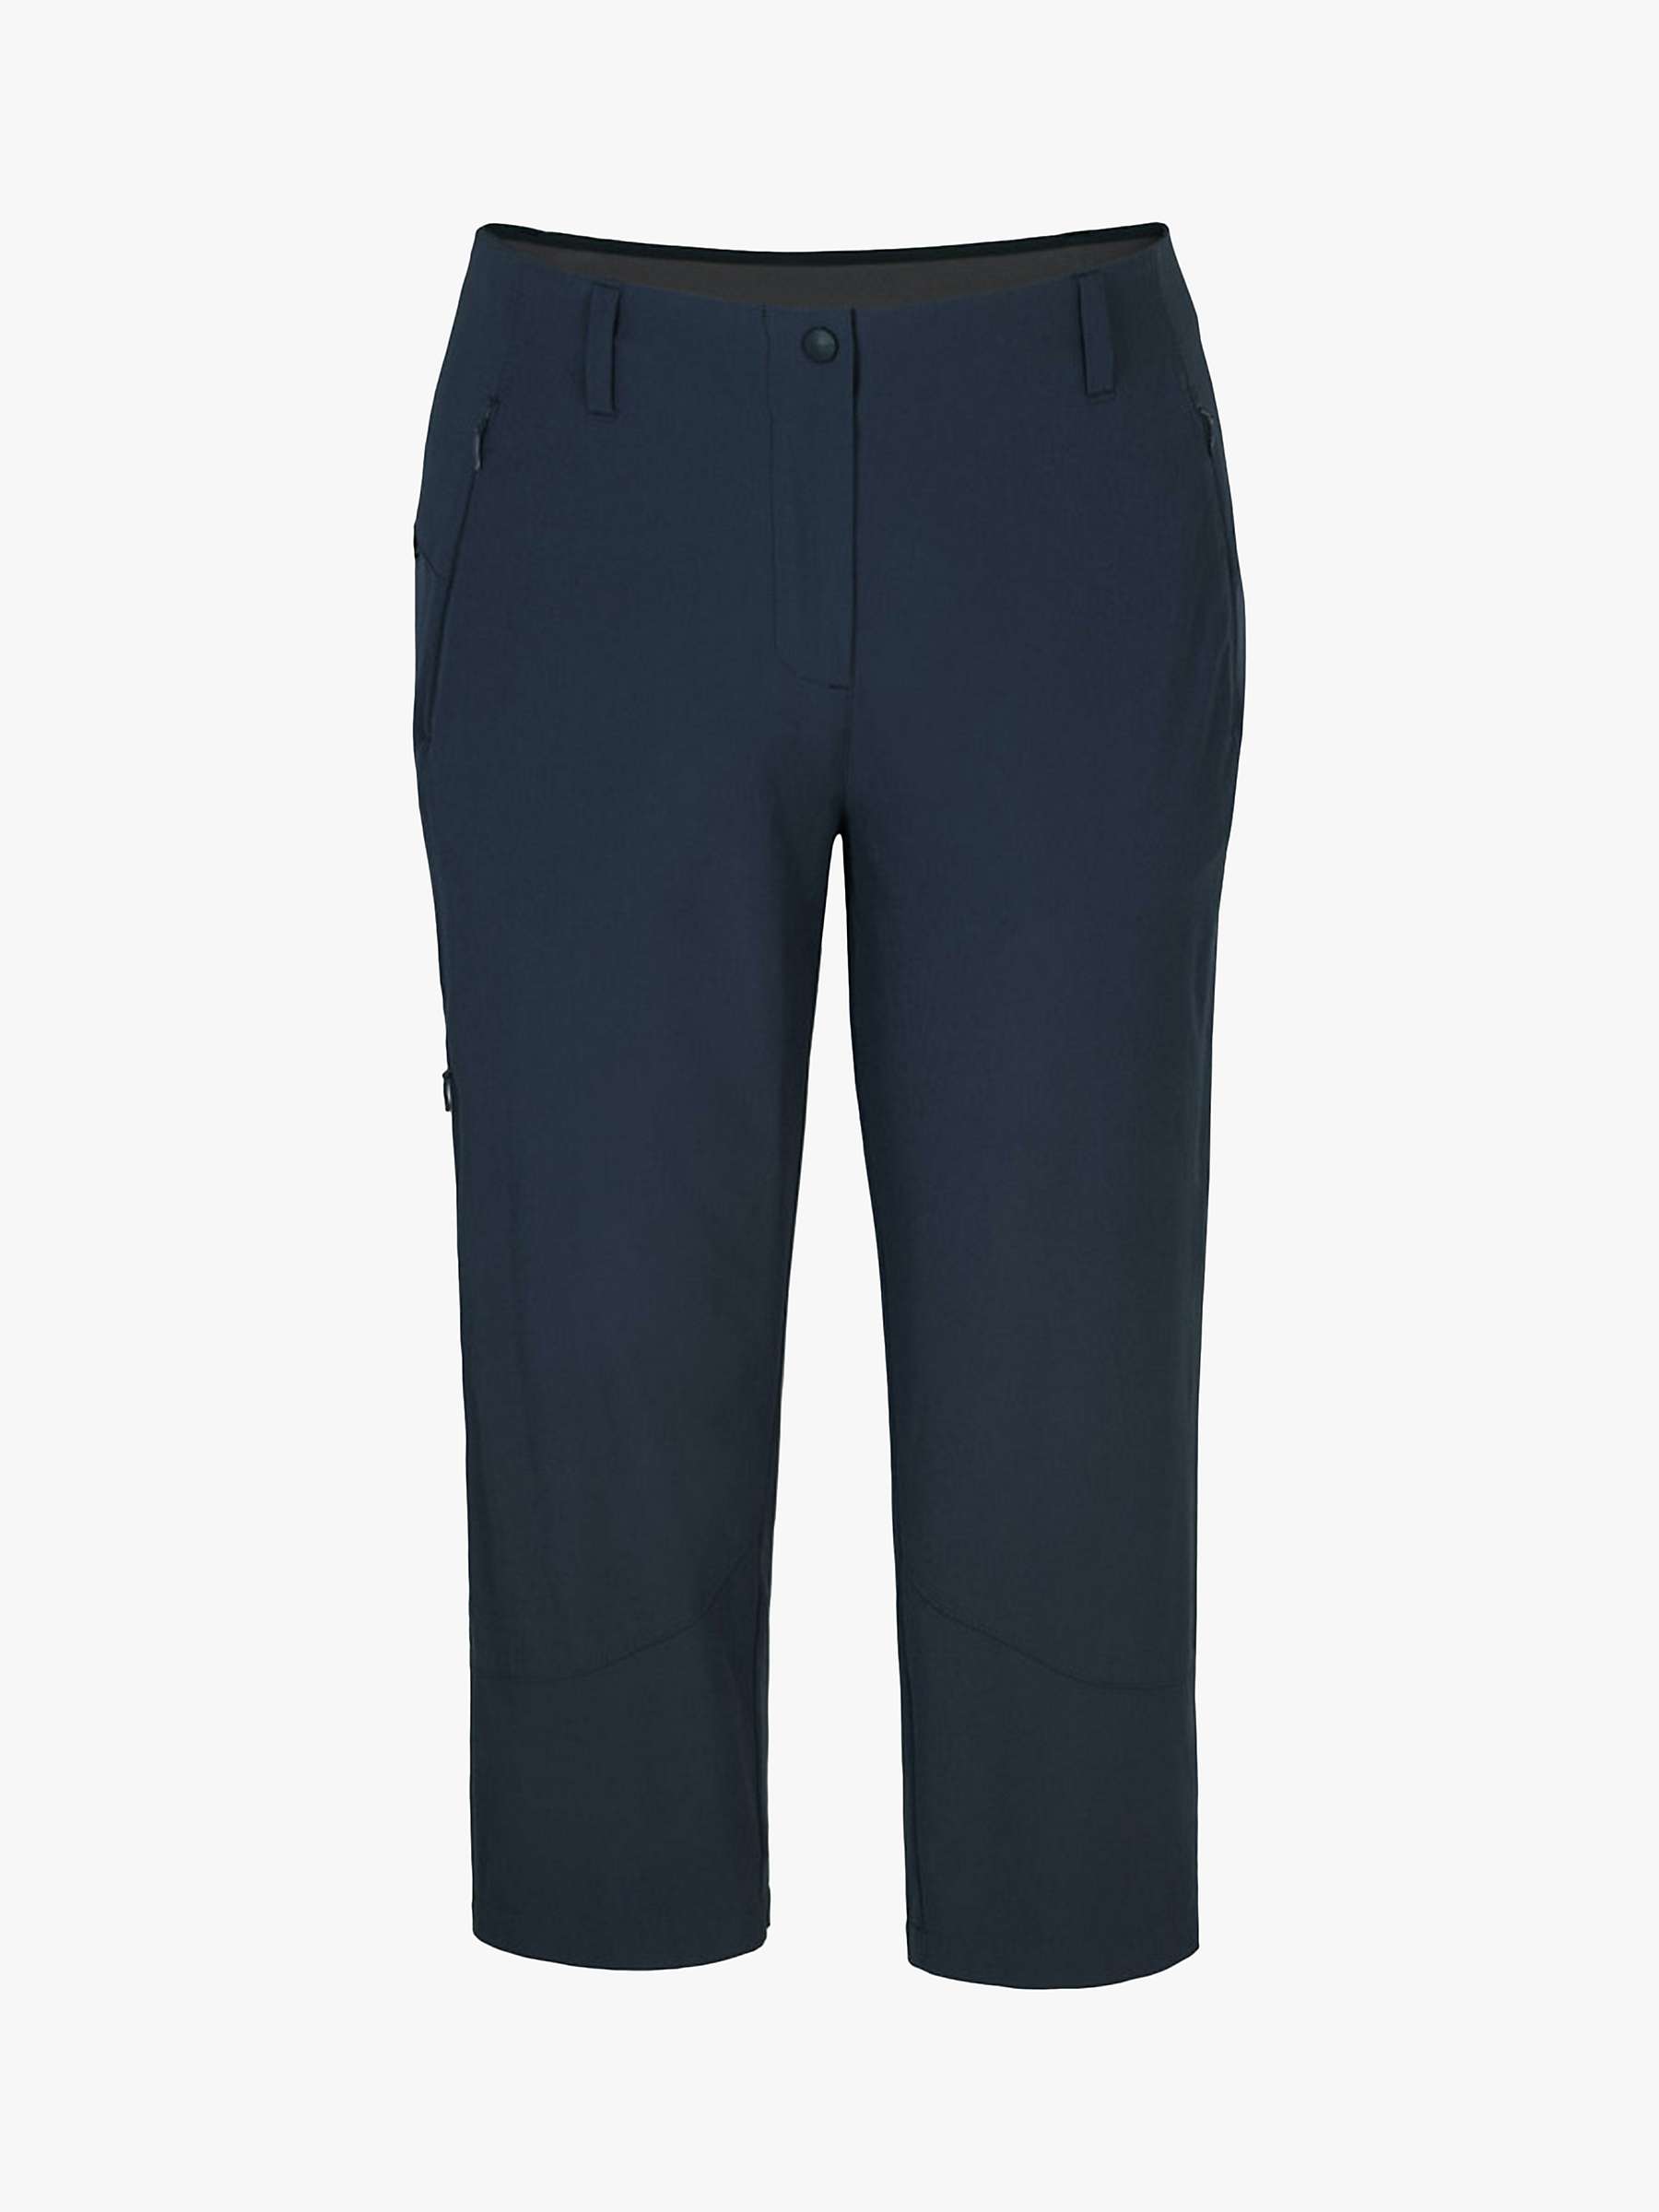 Buy Rohan Roamer Capri Walking Trousers Online at johnlewis.com